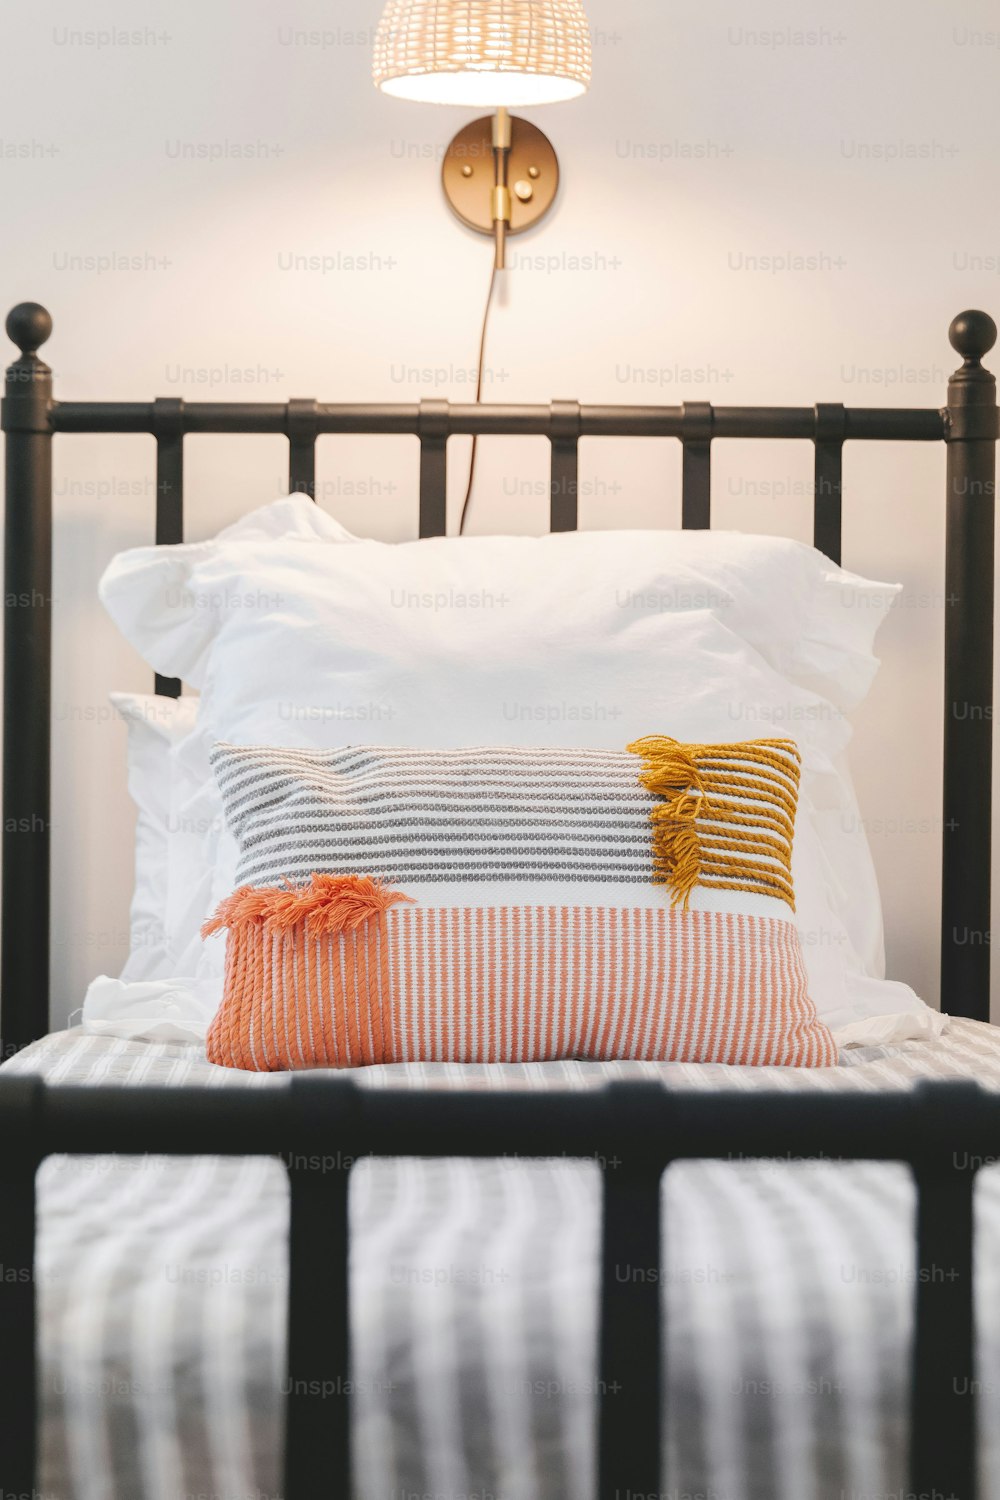 ein Bett mit zwei Kissen und einer Lampe